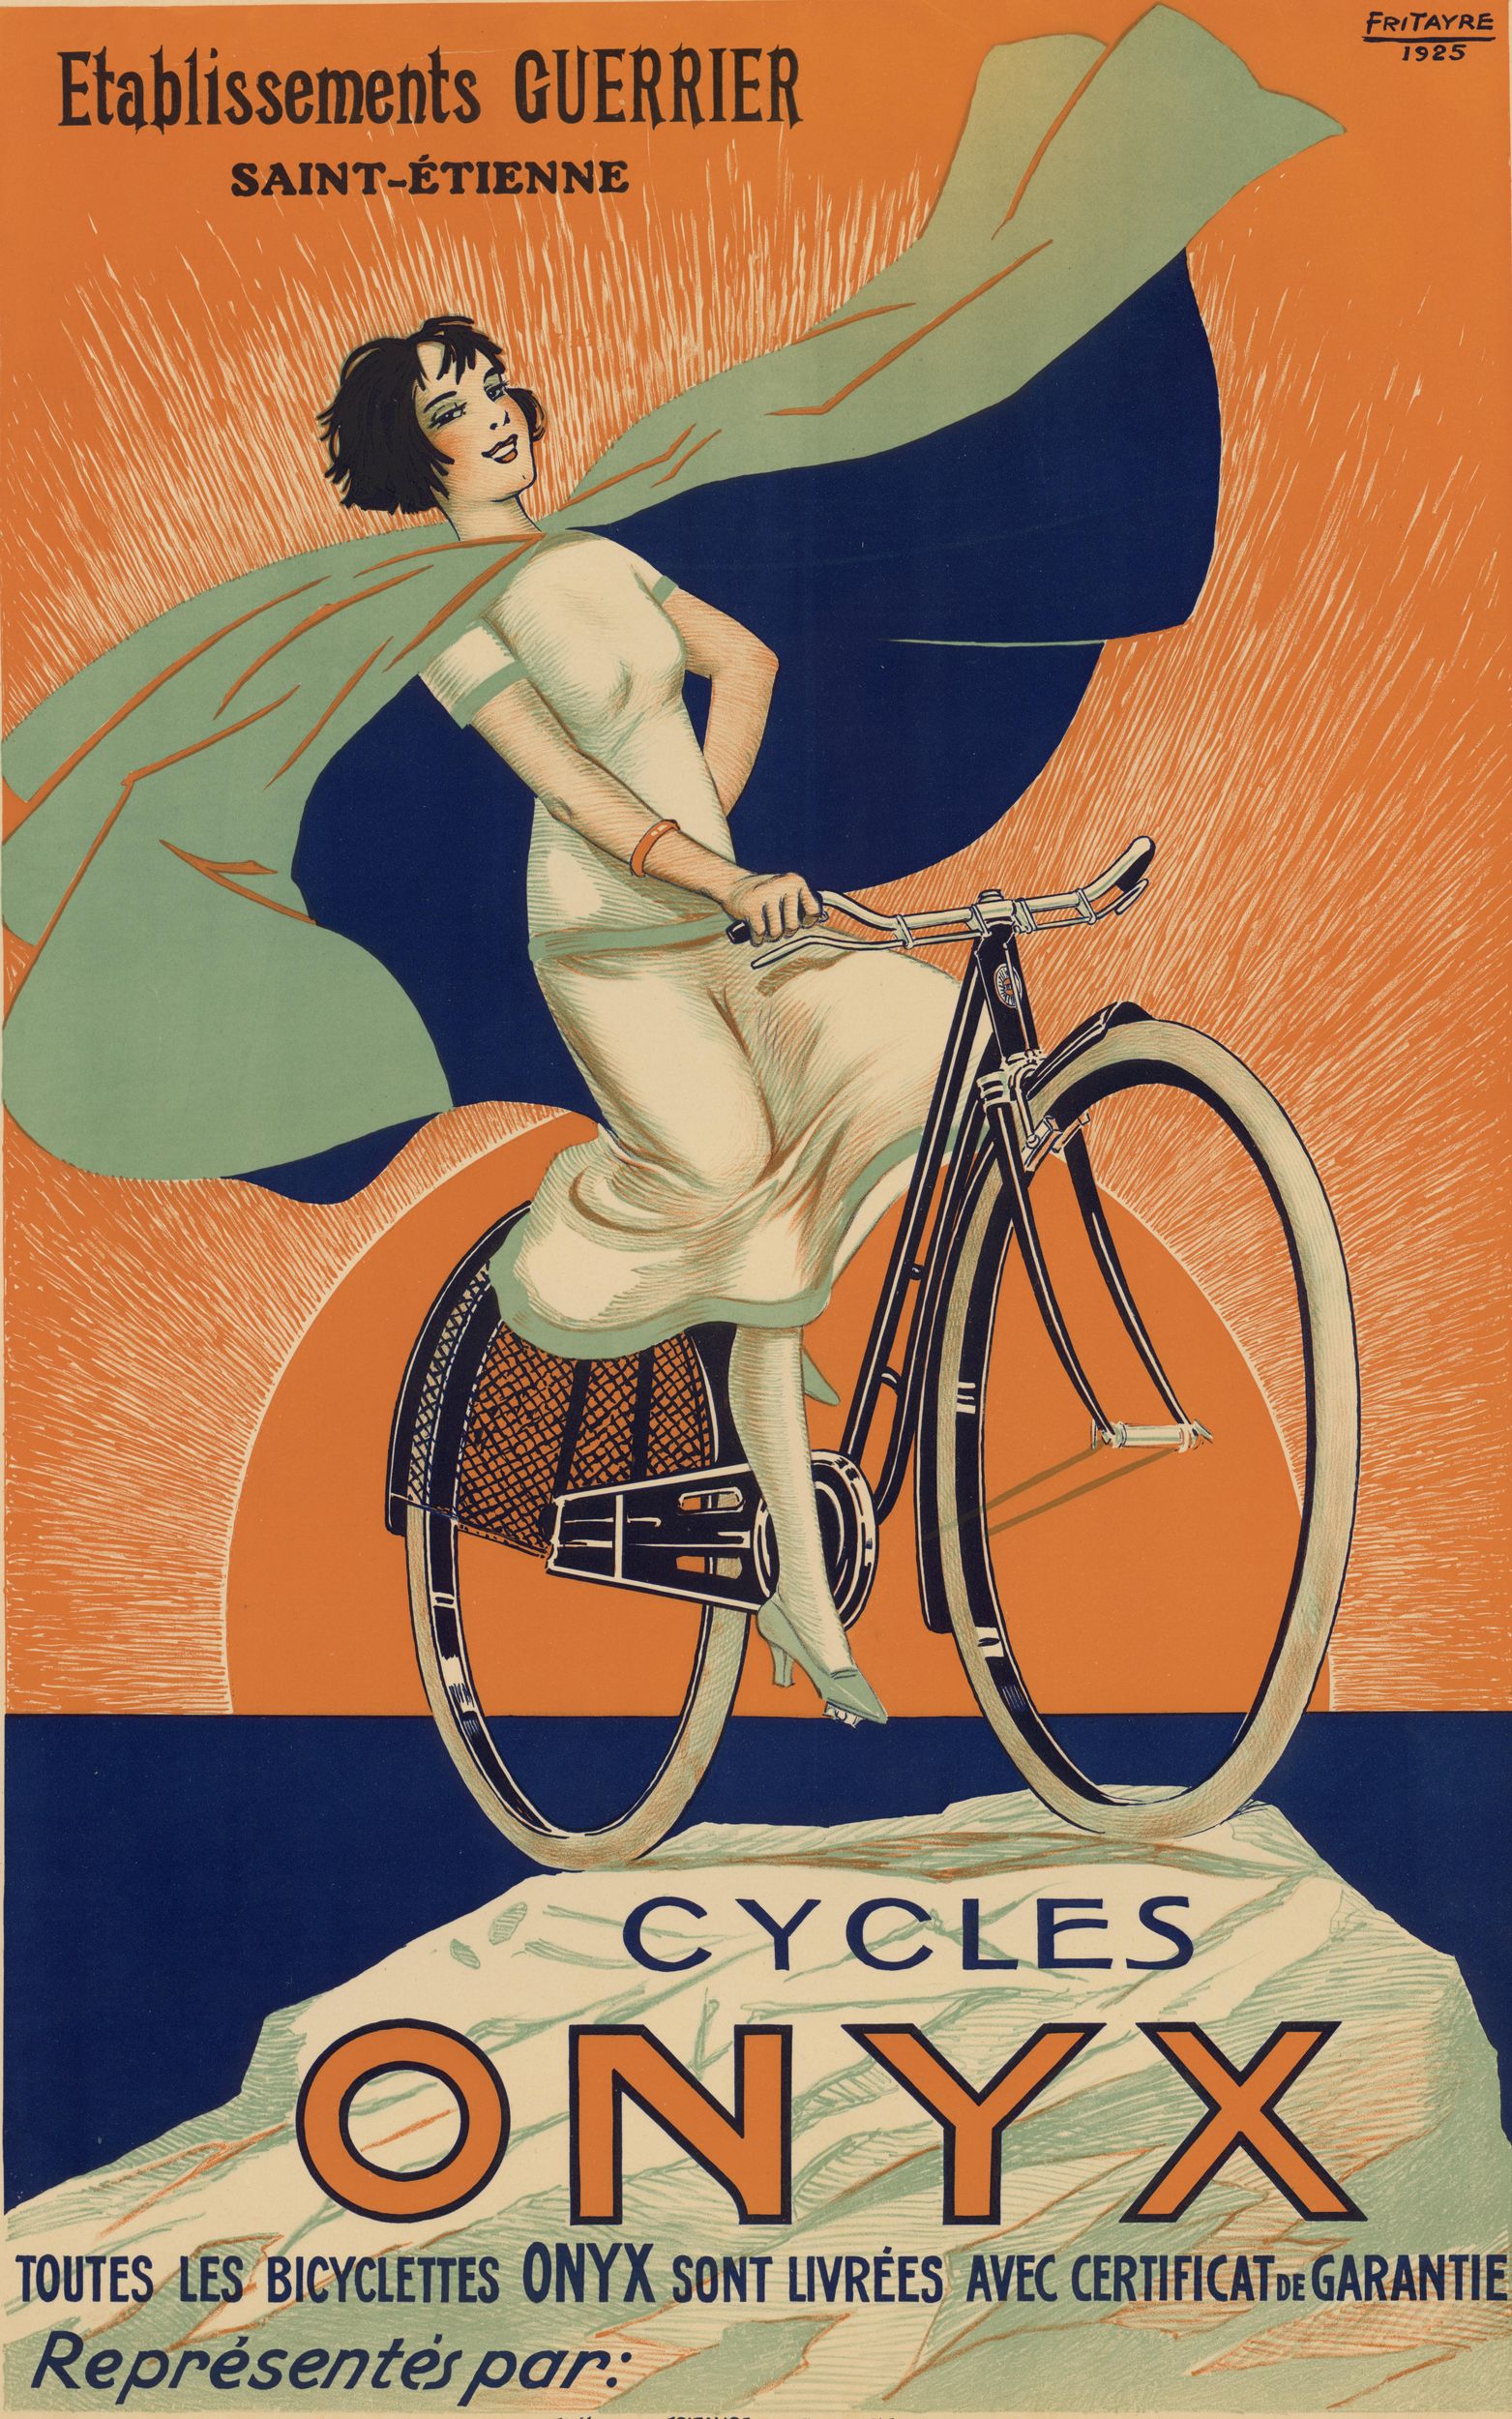 Etablissements Guerrier, Saint-Etienne - Cycles Onyx : affiche publicitaire couleur (1925, cote : 2FI/3429)